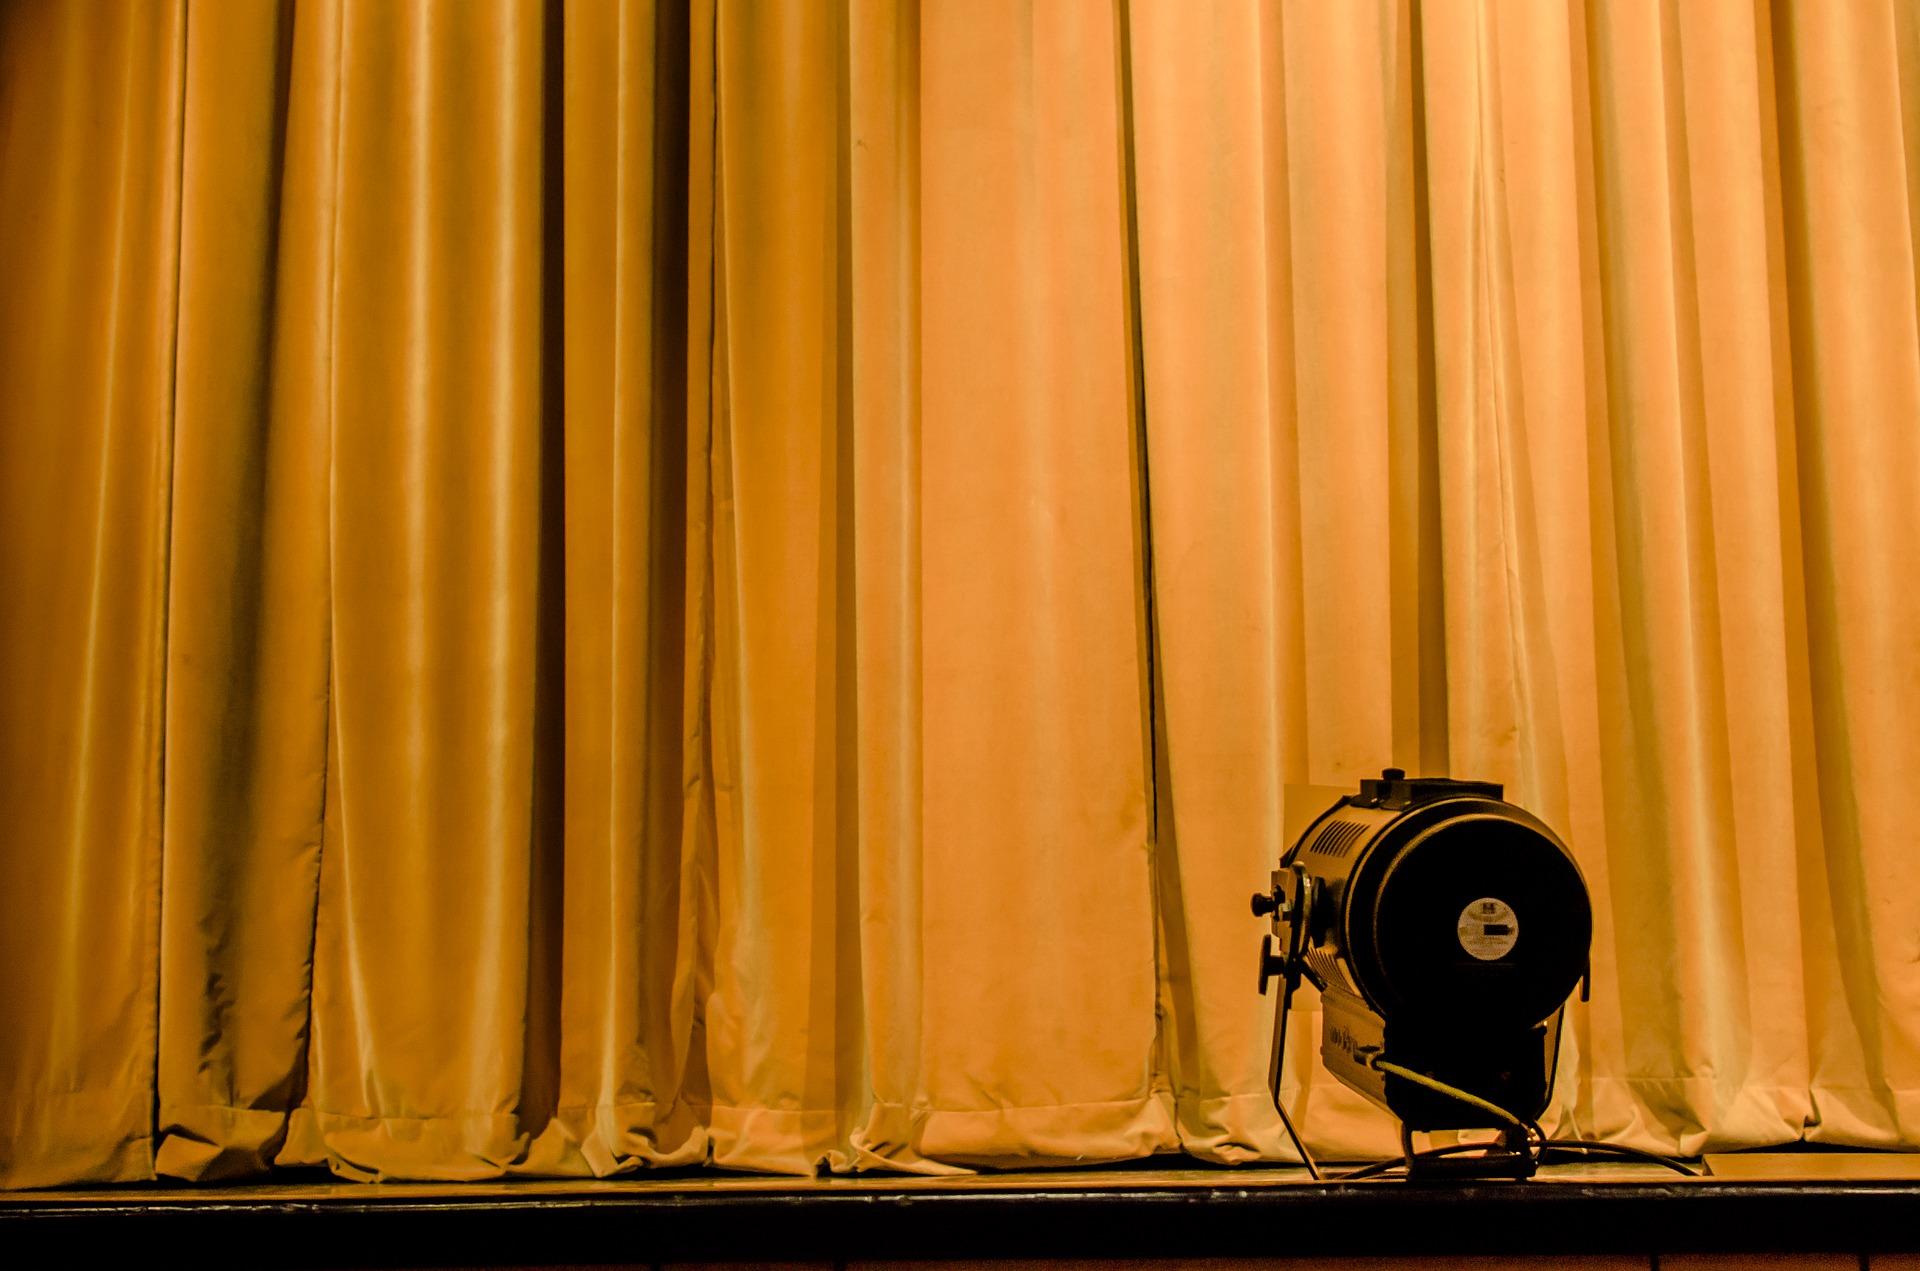 Theatre curtain